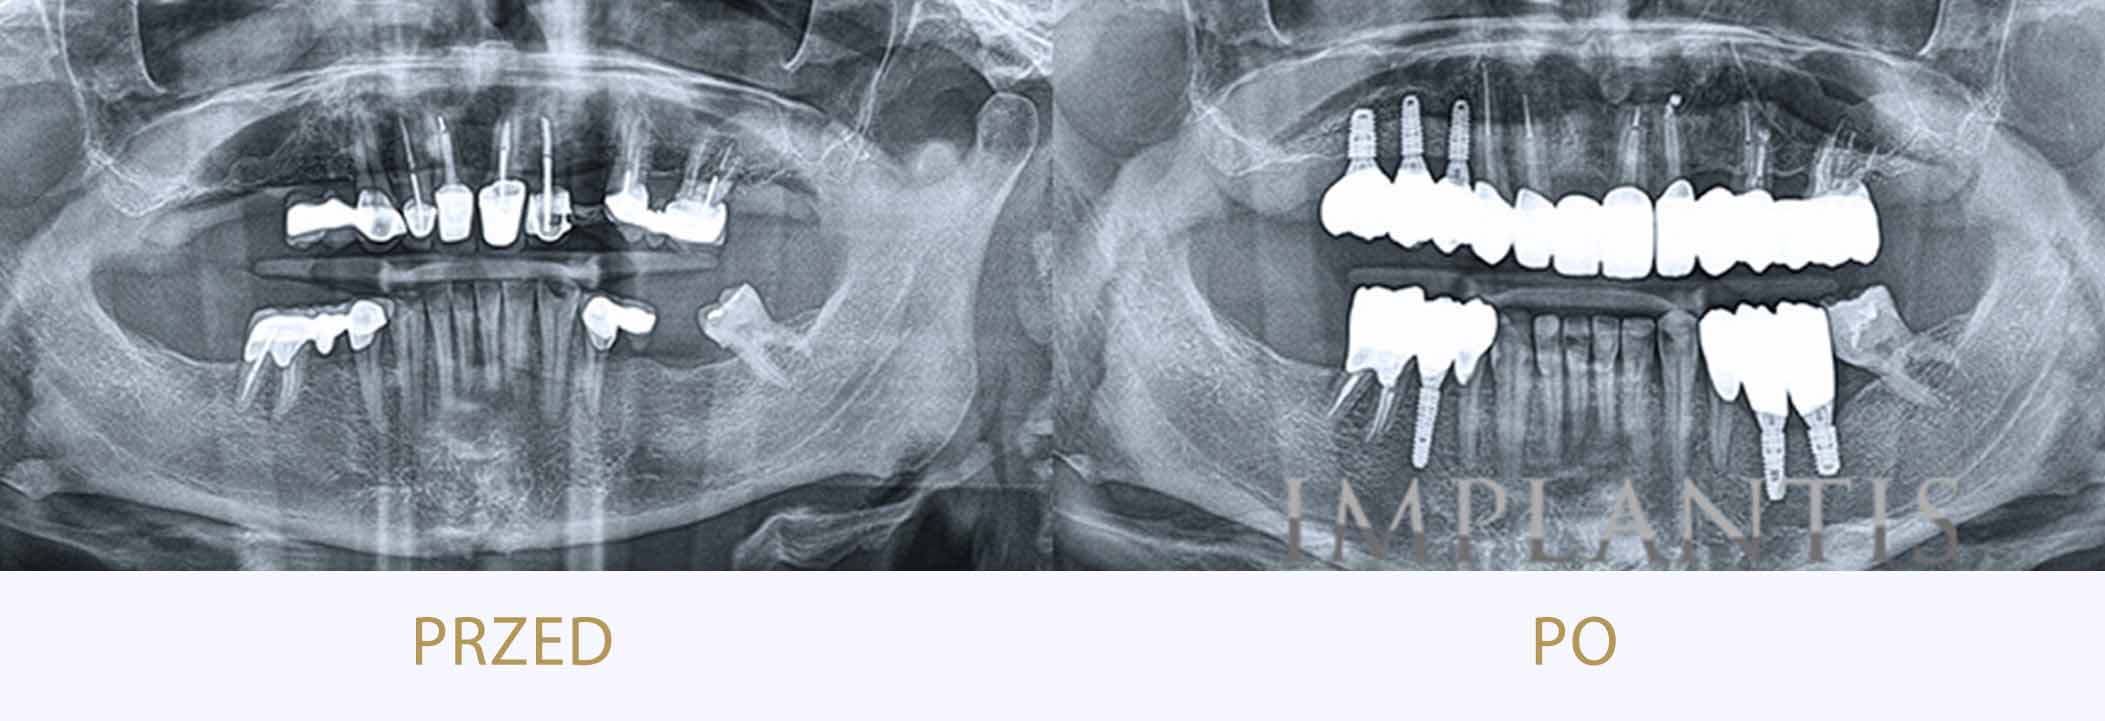 zęby przed i po leczeniu Implantami w Implantis w Krakowie